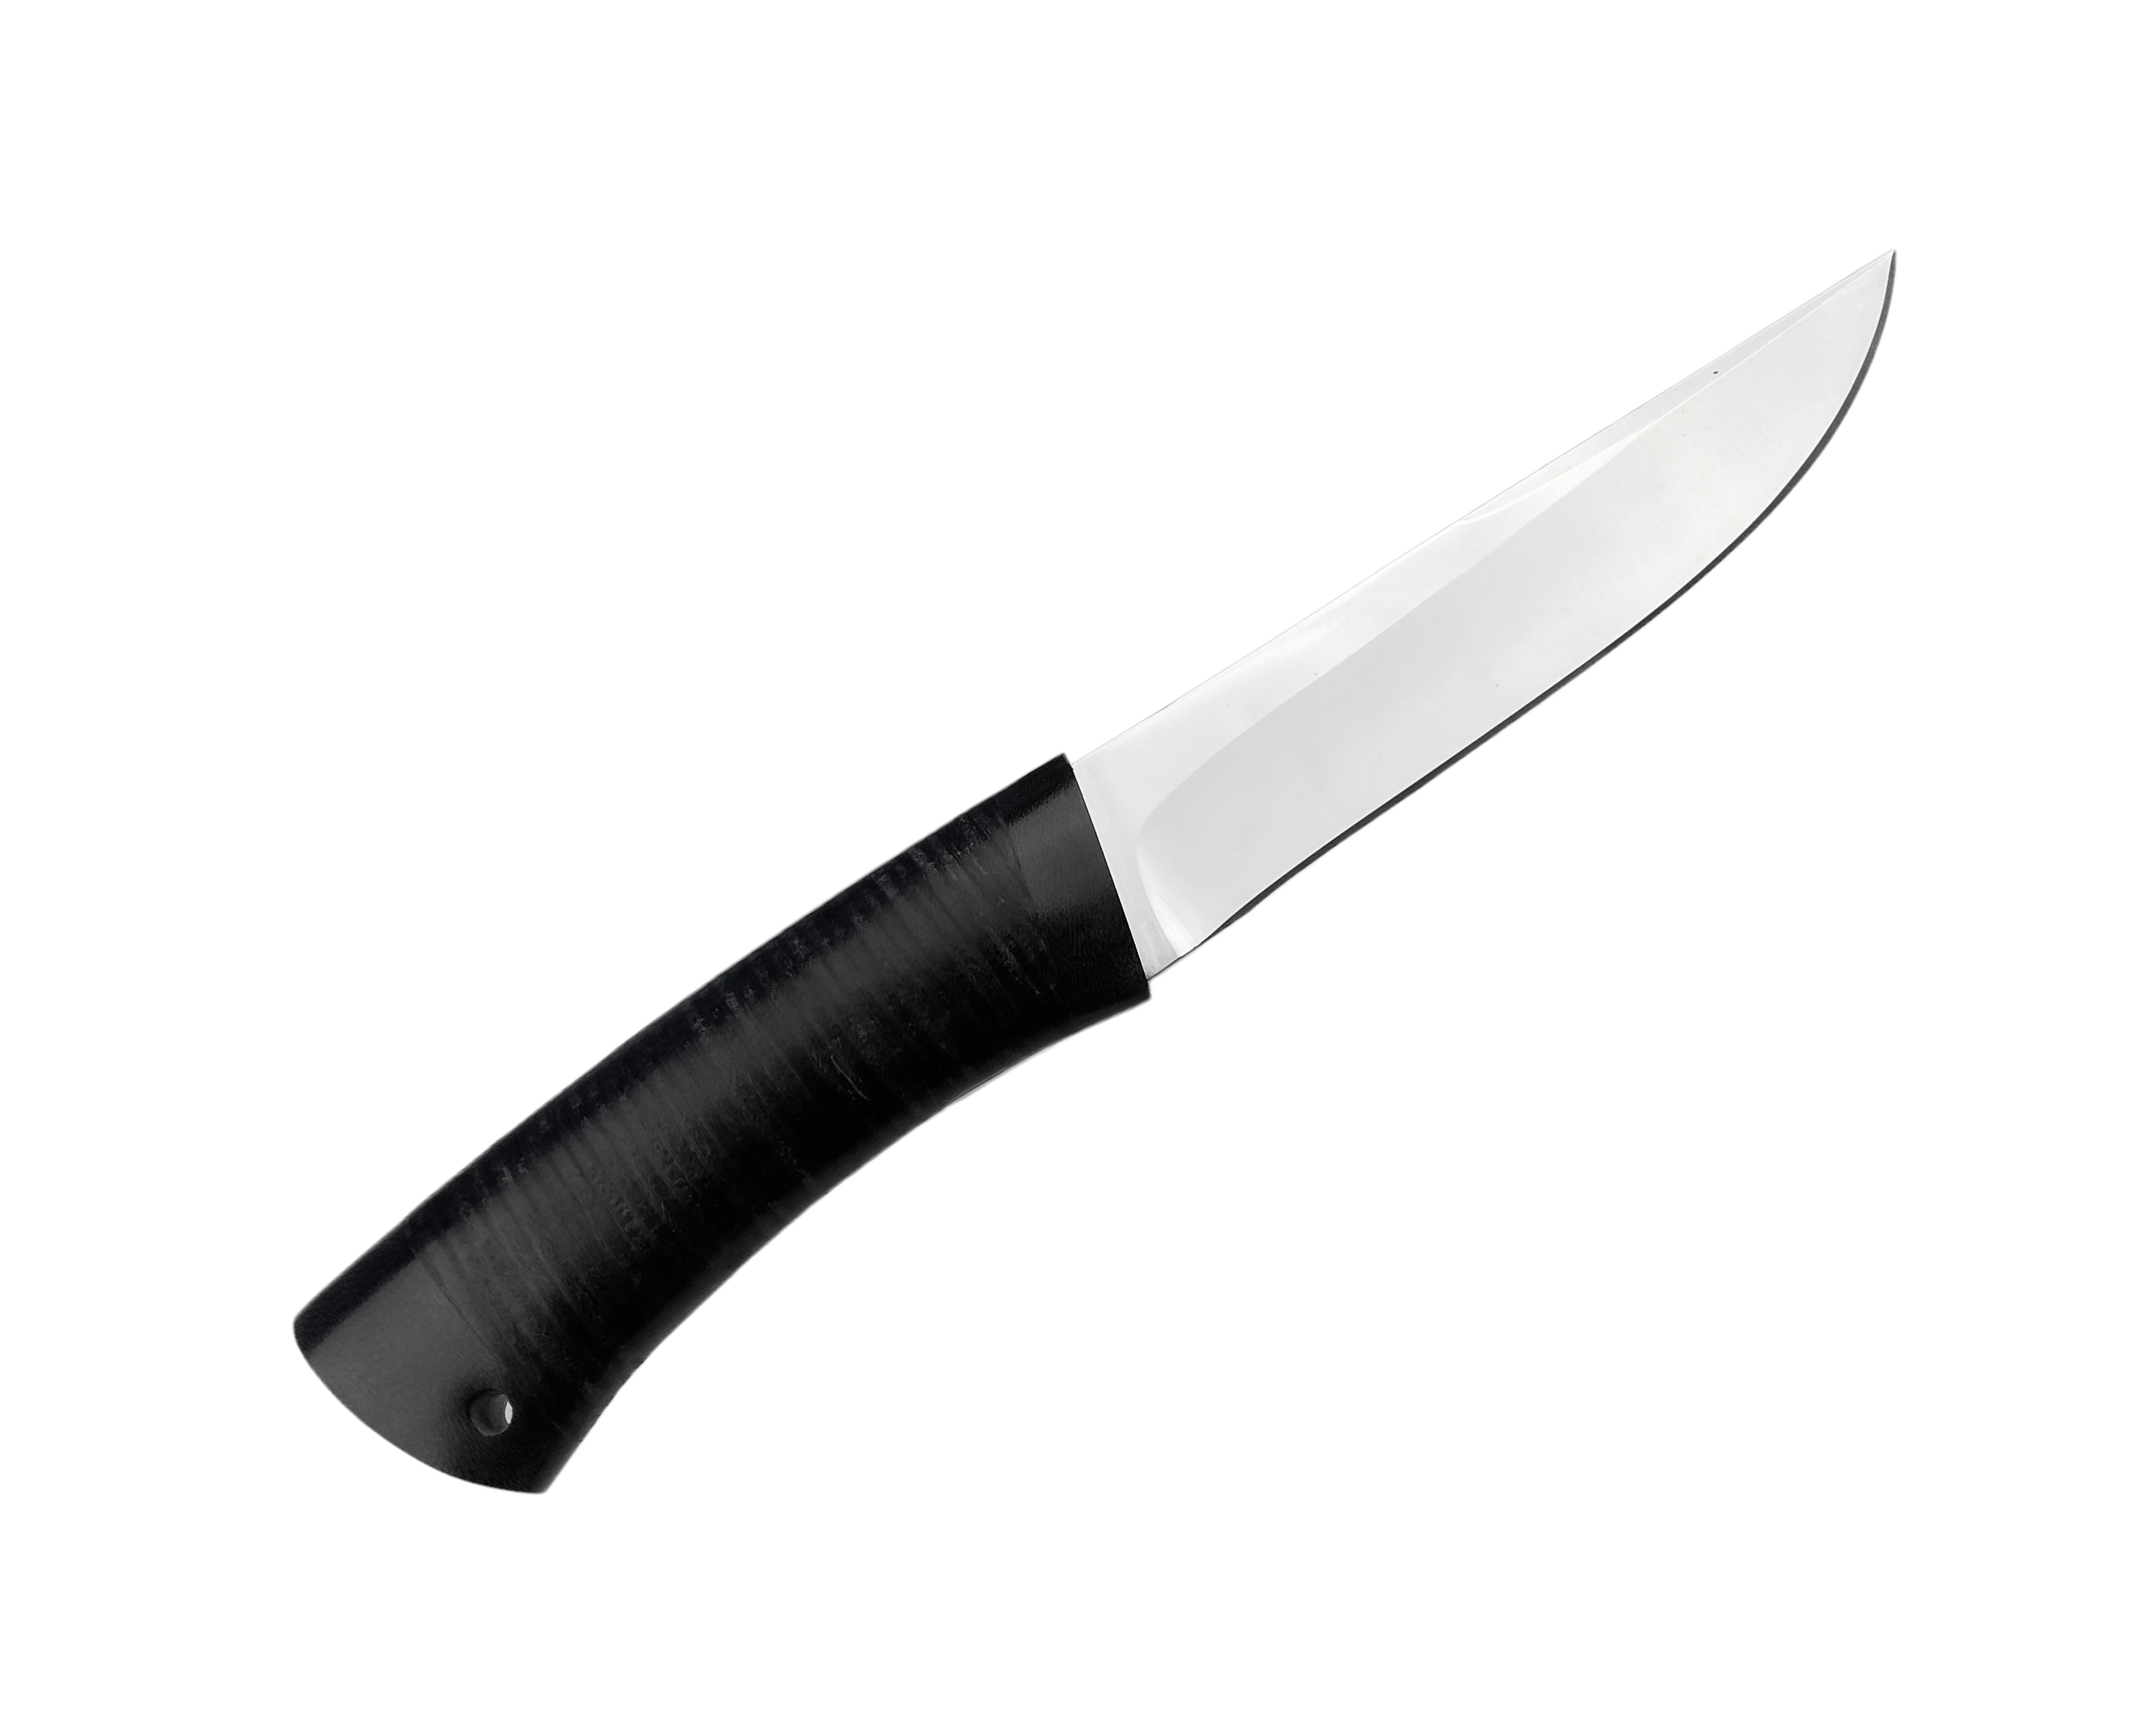 Нож Росоружие Пикник 2 ЭИ-107 кожа    - фото 1